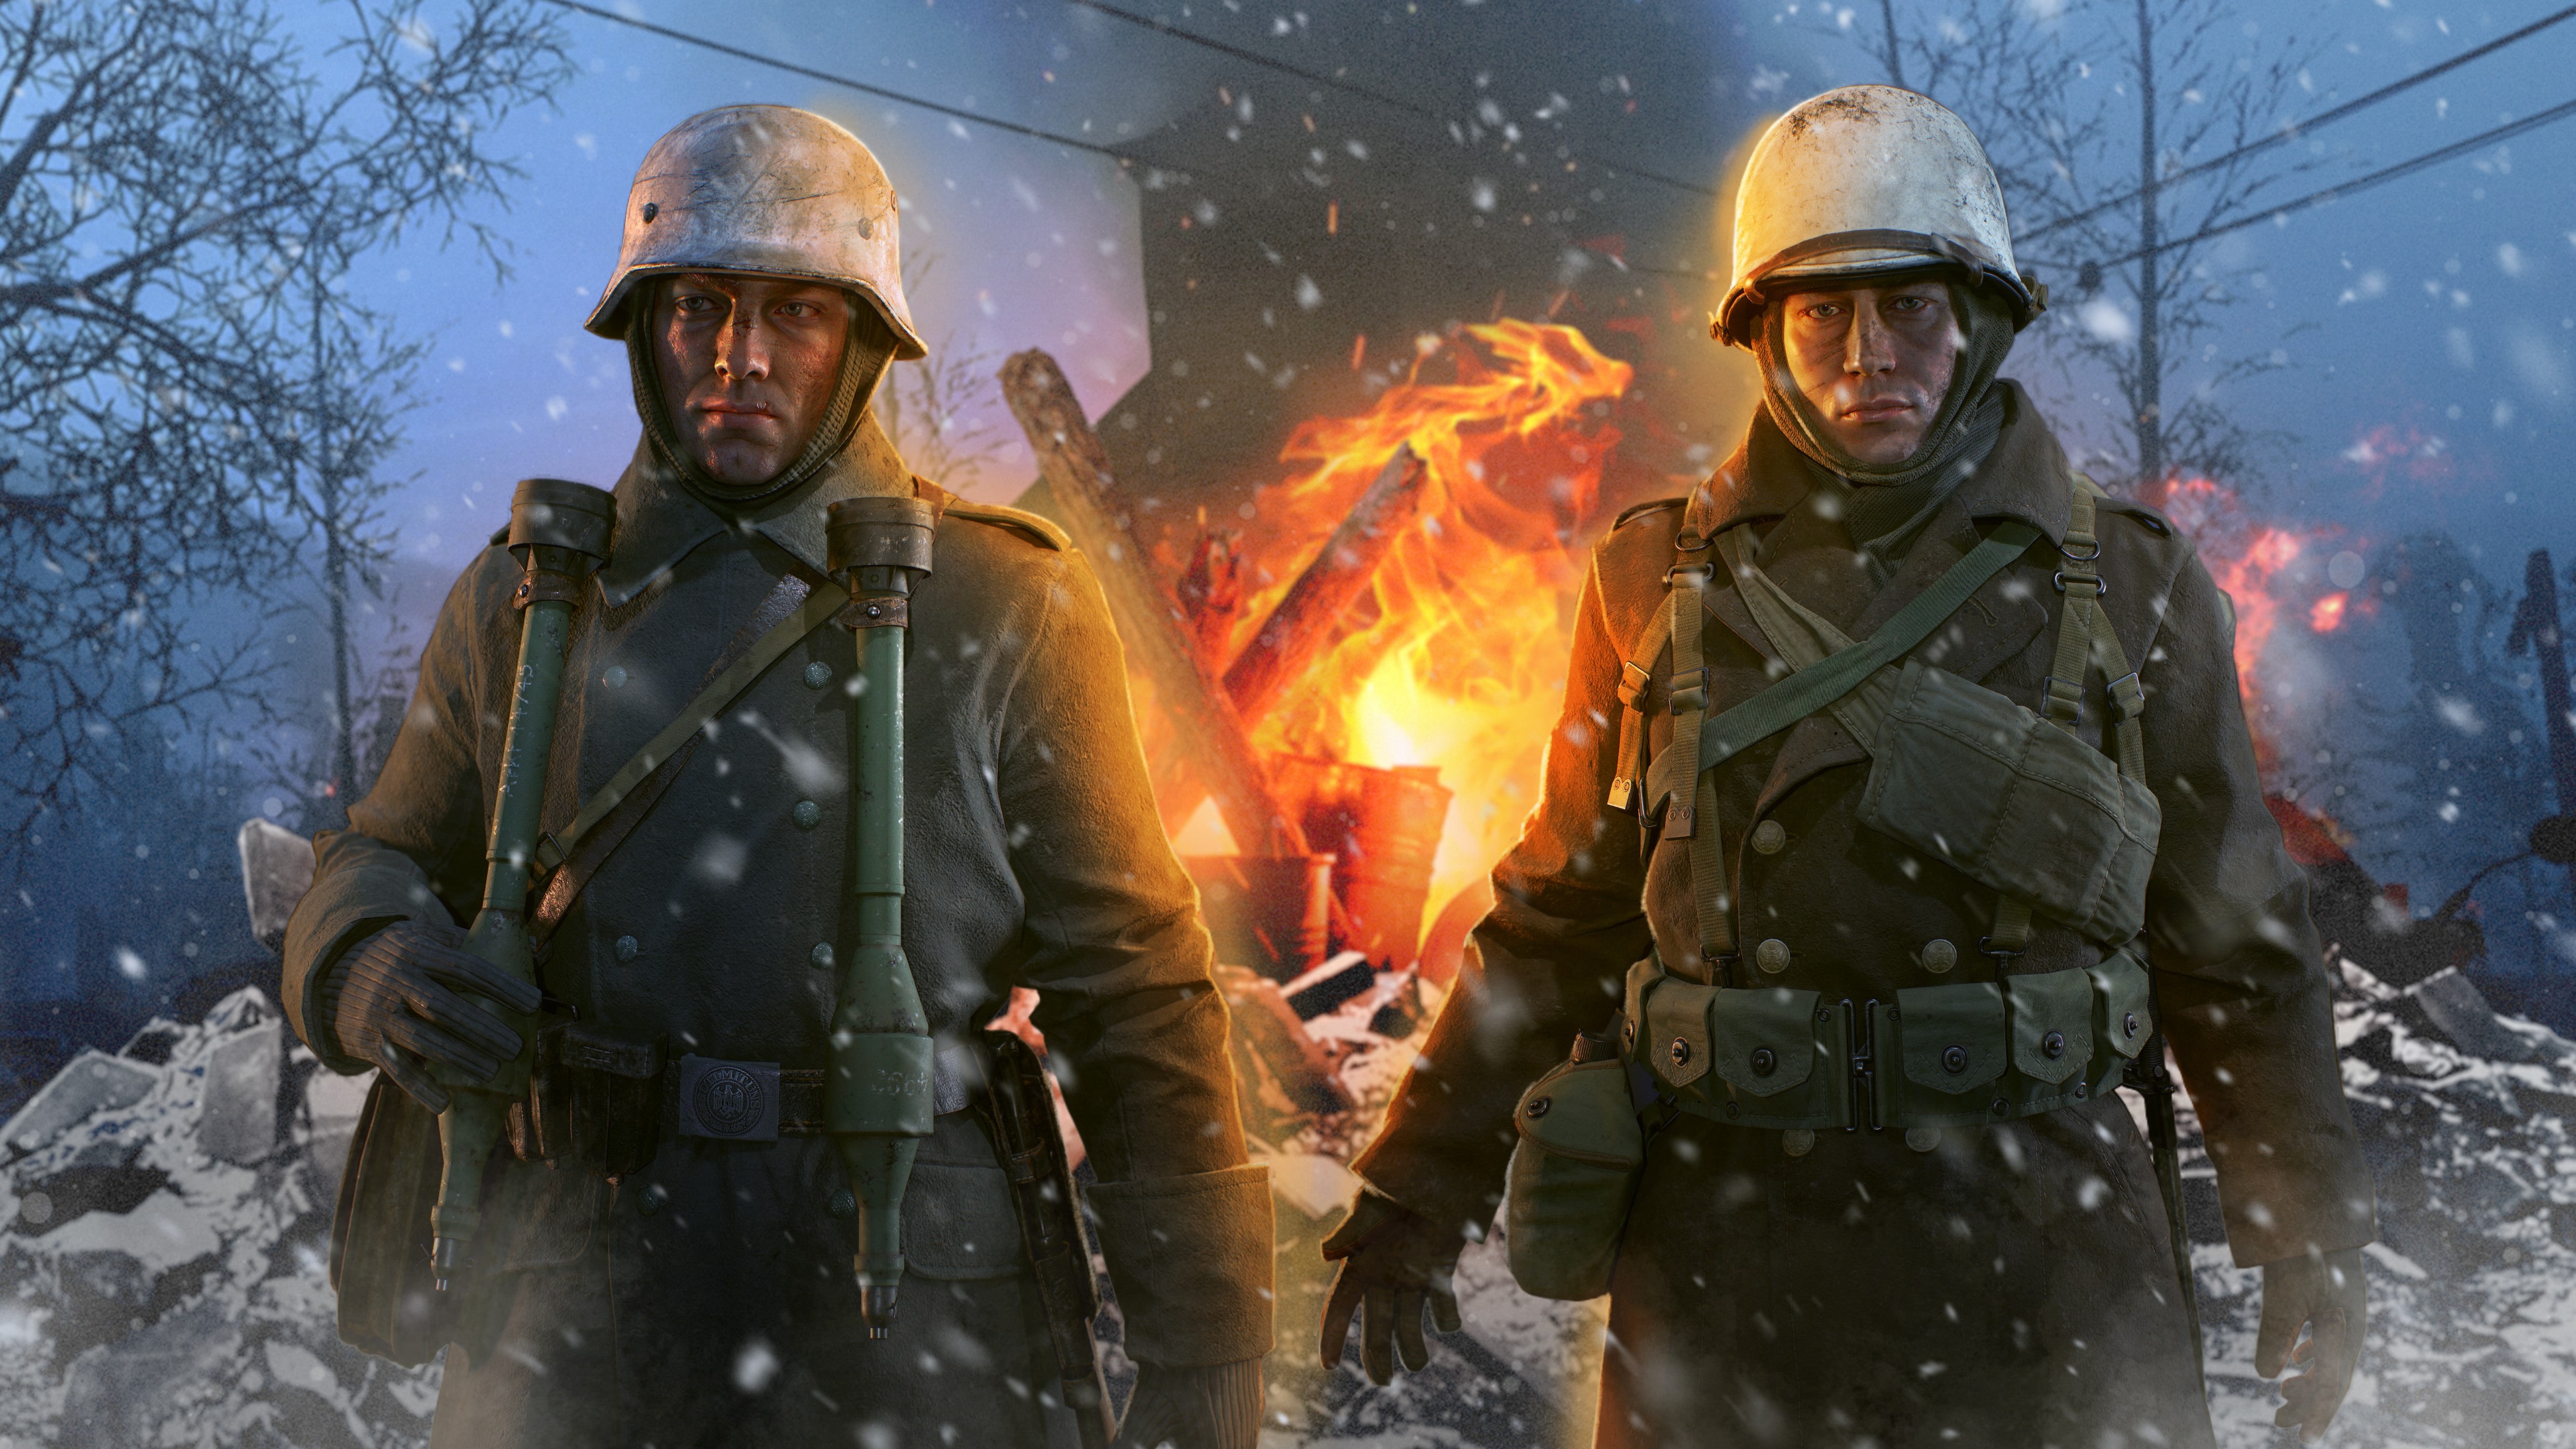 Hell Let Loose - Winter Warfare